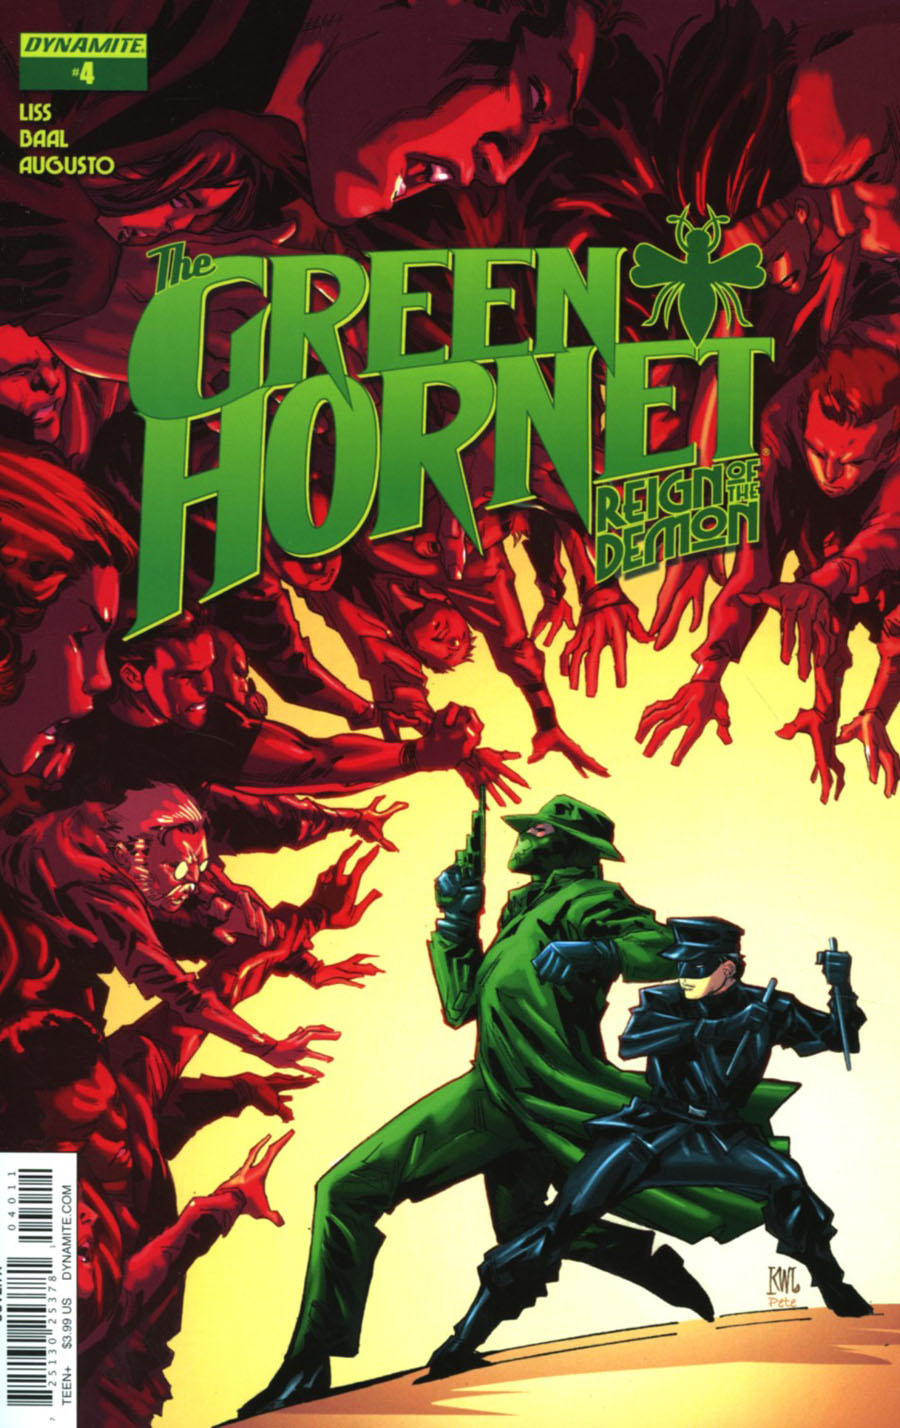 Green Hornet Reign Of The Demon #4 Cover A Regular Ken Lashley Cover